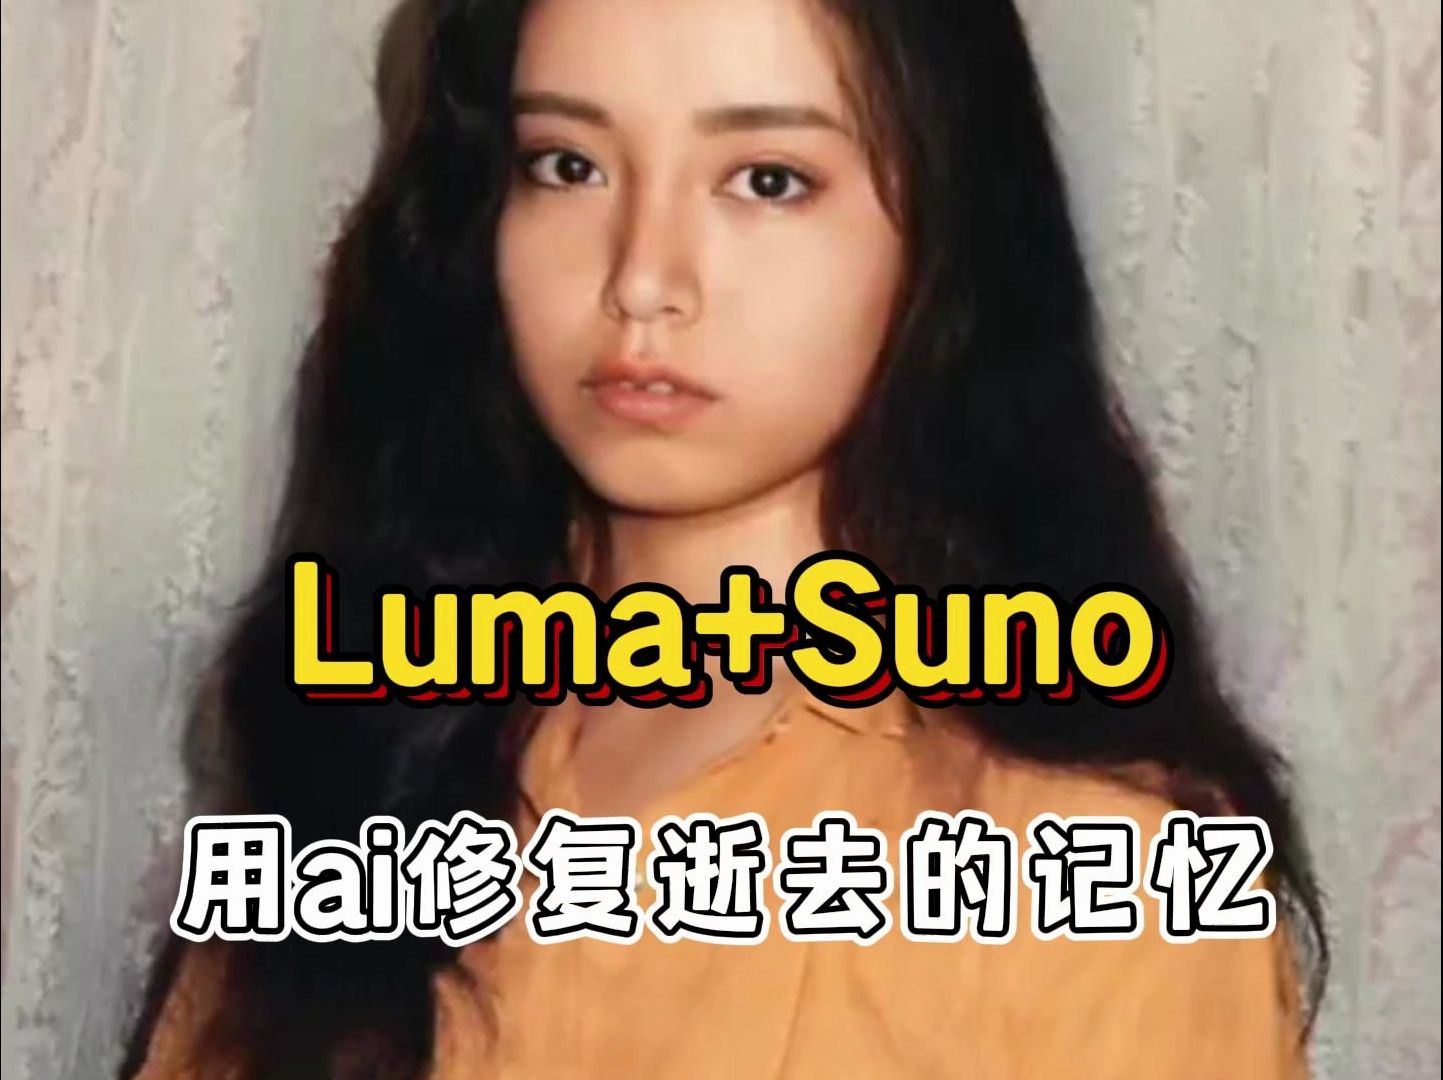 Luma+Suno，用ai修复逝去的记忆！向青春致敬